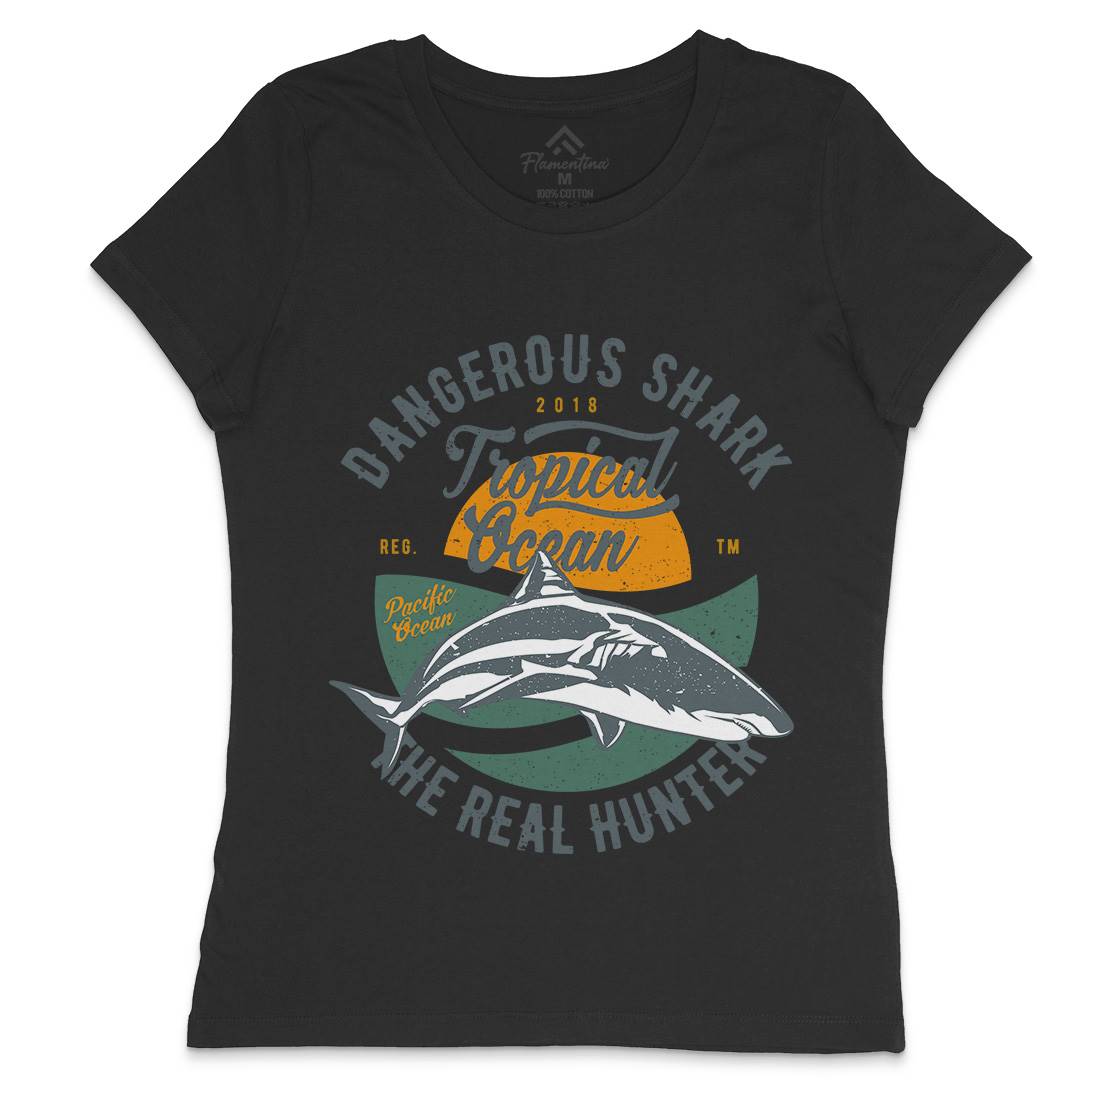 Dangerous Shark Womens Crew Neck T-Shirt Navy A643